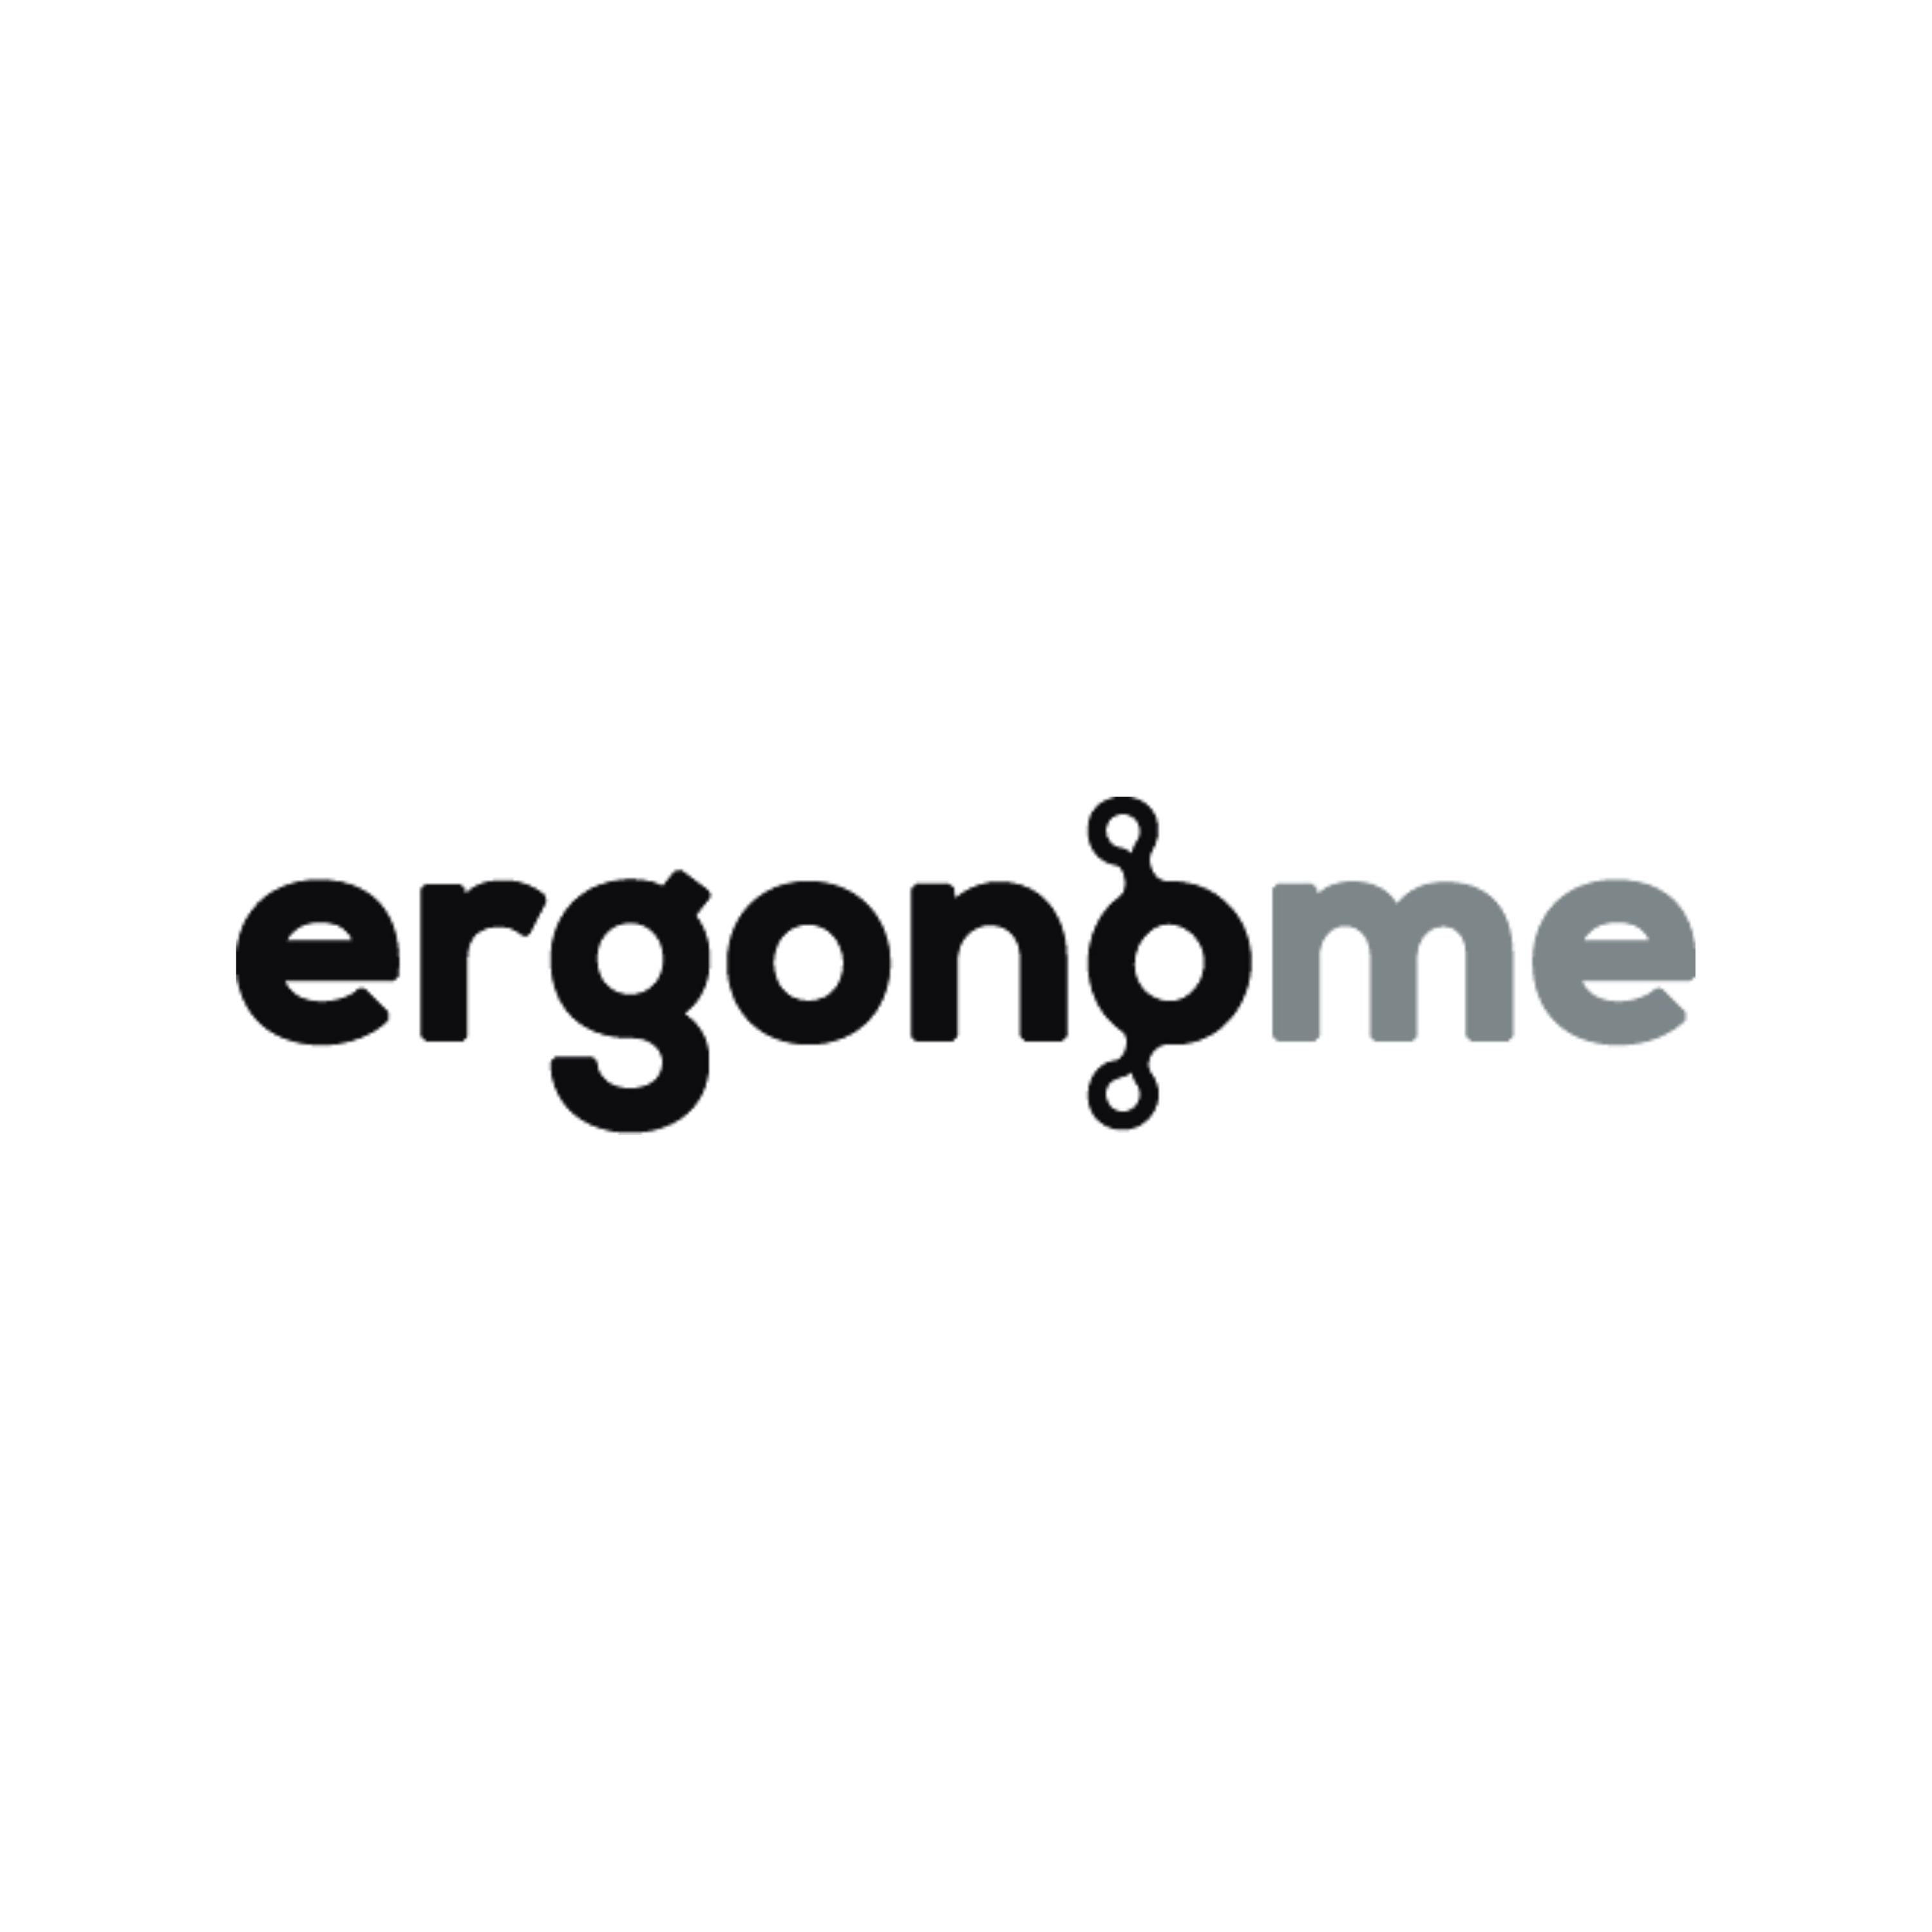 ergonome - przekierowanie do strony www